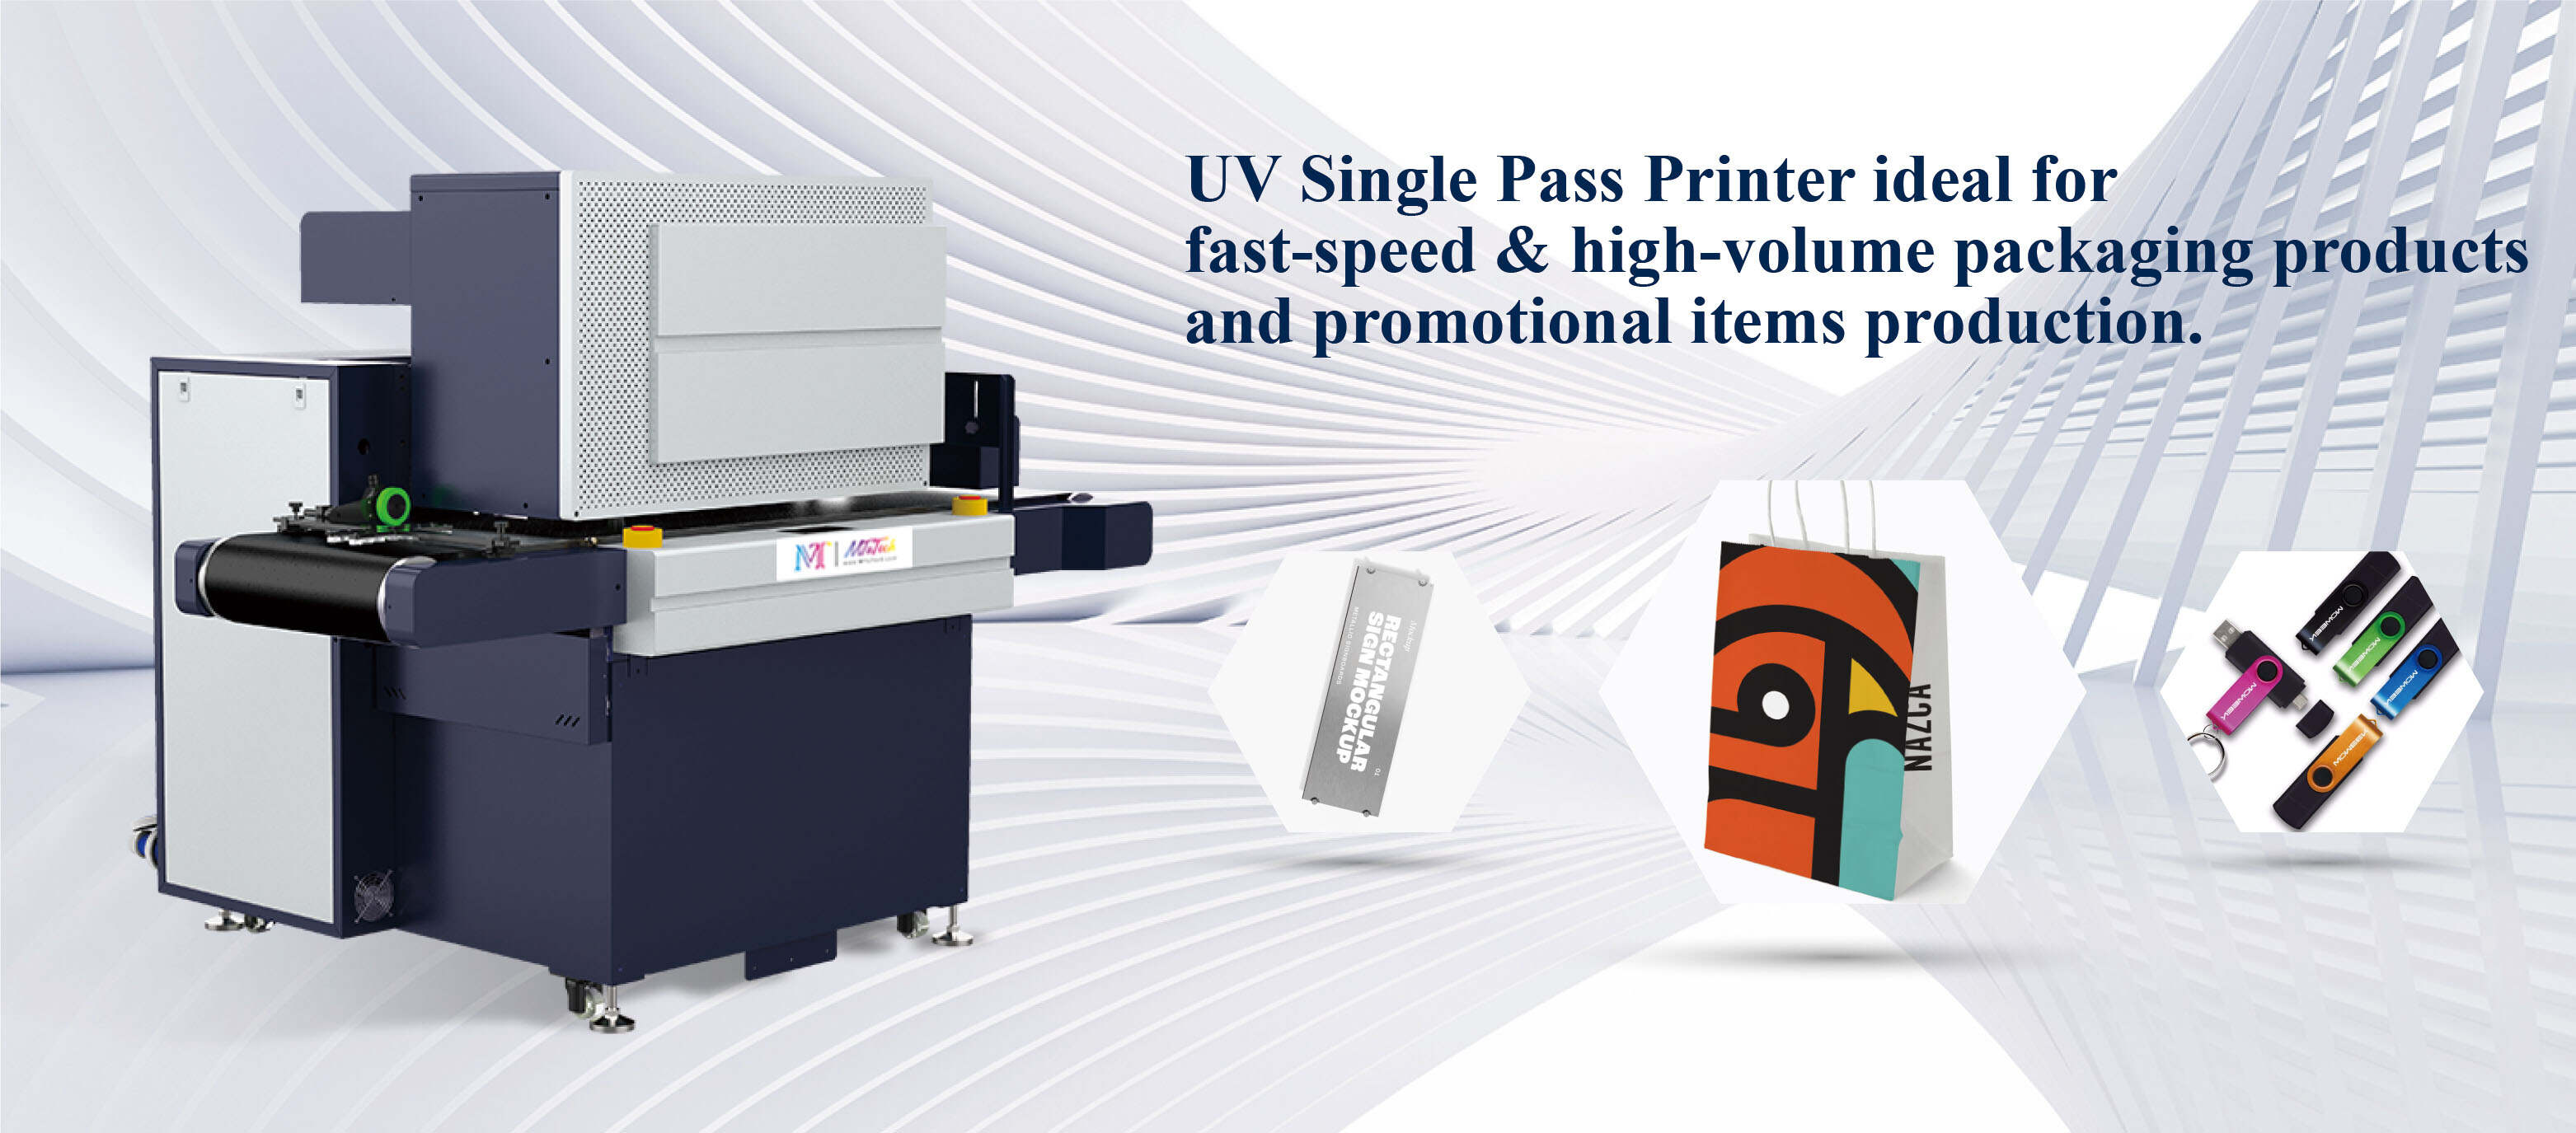 UV single pass printer